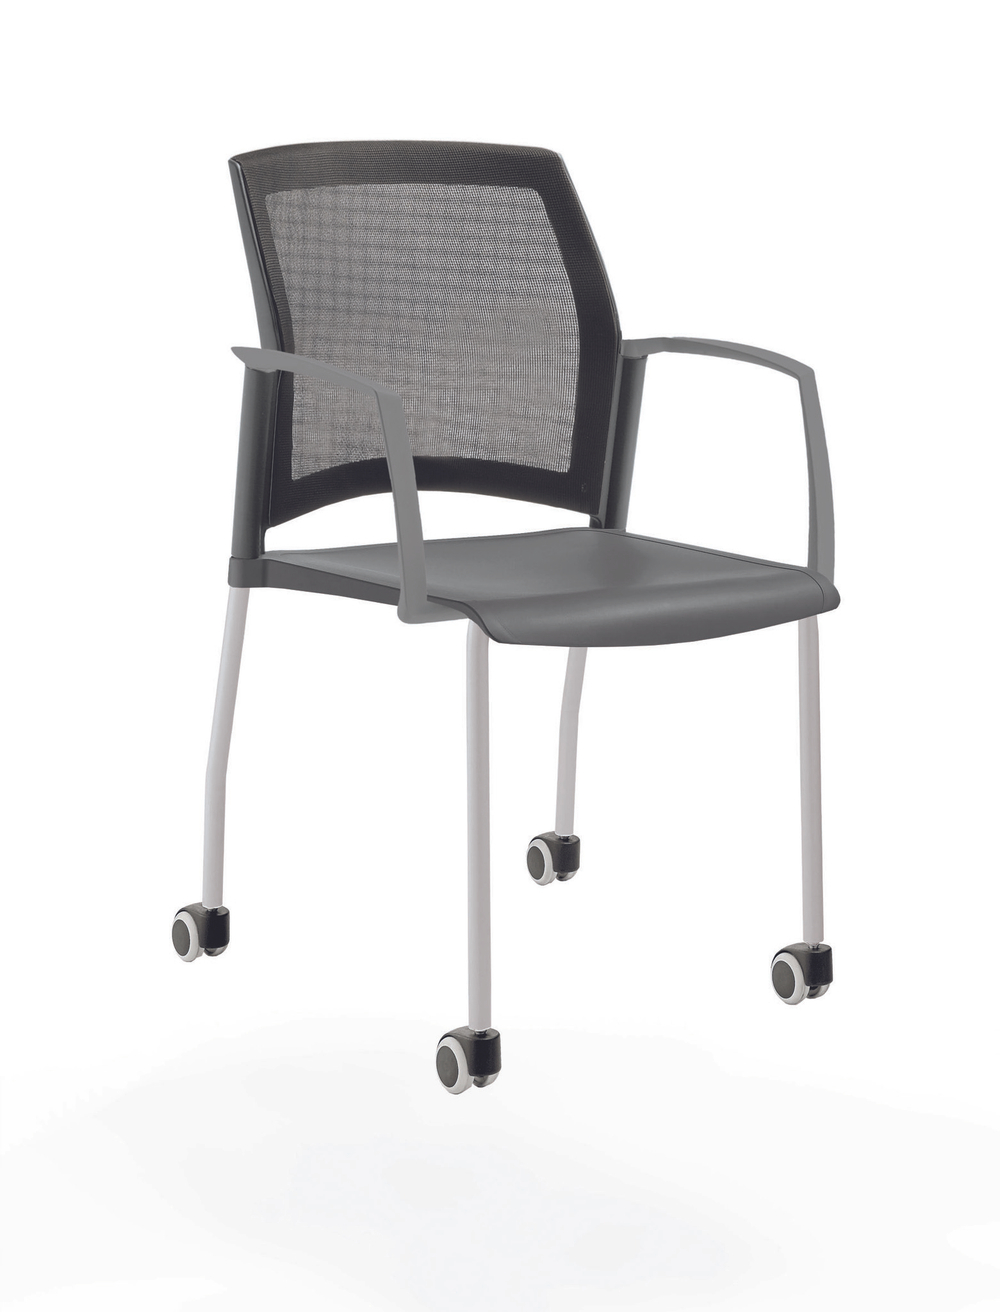 стул Rewind на 4 ногах и колесах, каркас серый, пластик серый, с закрытыми подлокотниками, спинка-сетка